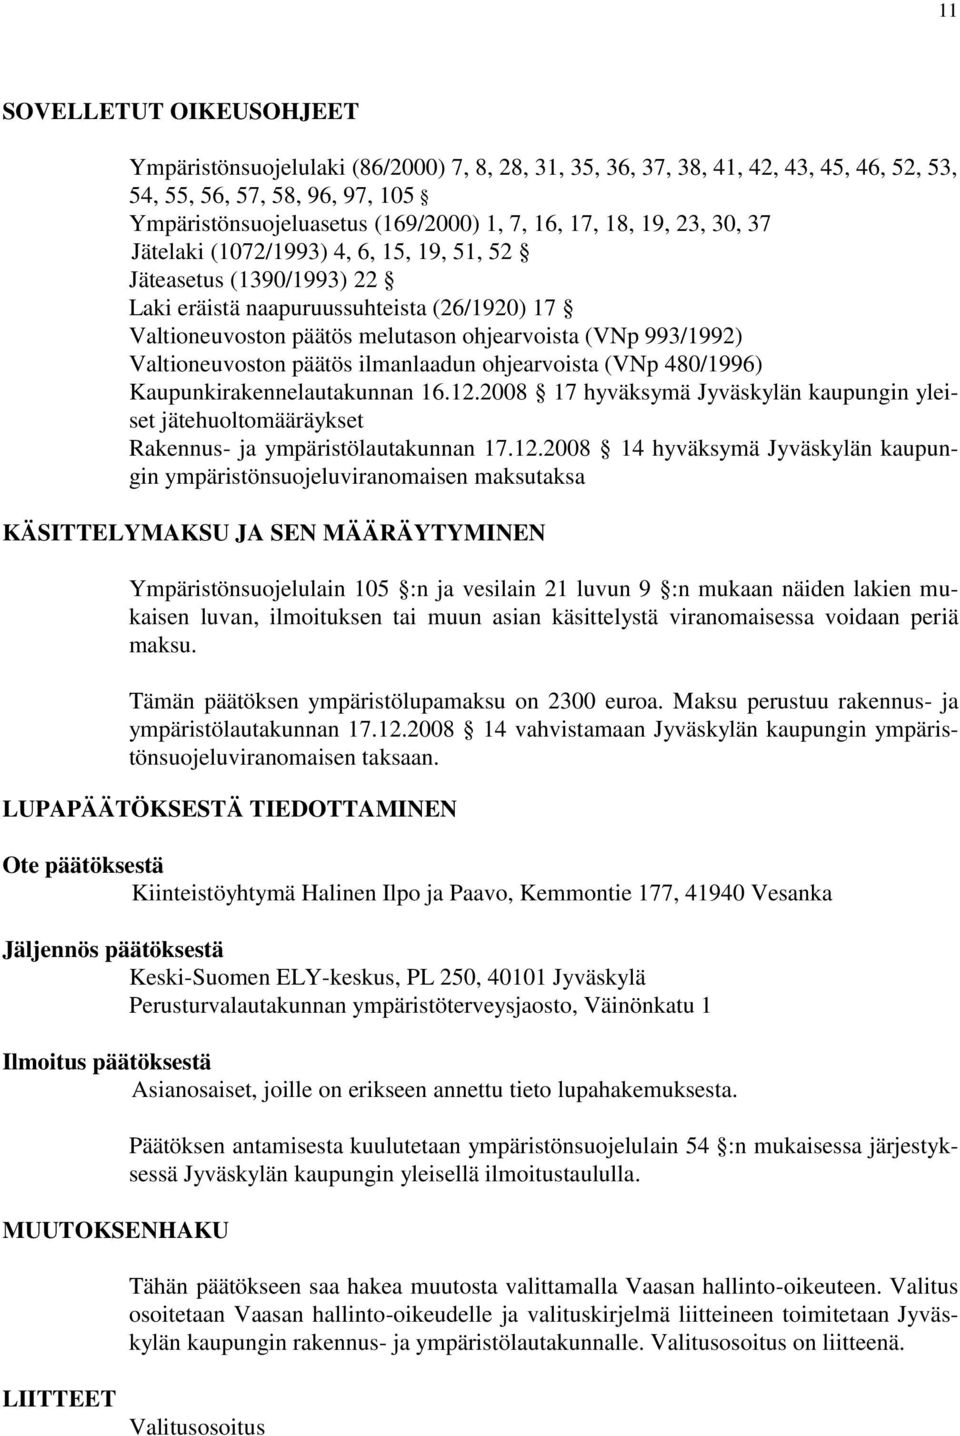 Valtioneuvoston päätös ilmanlaadun ohjearvoista (VNp 480/1996) Kaupunkirakennelautakunnan 16.12.